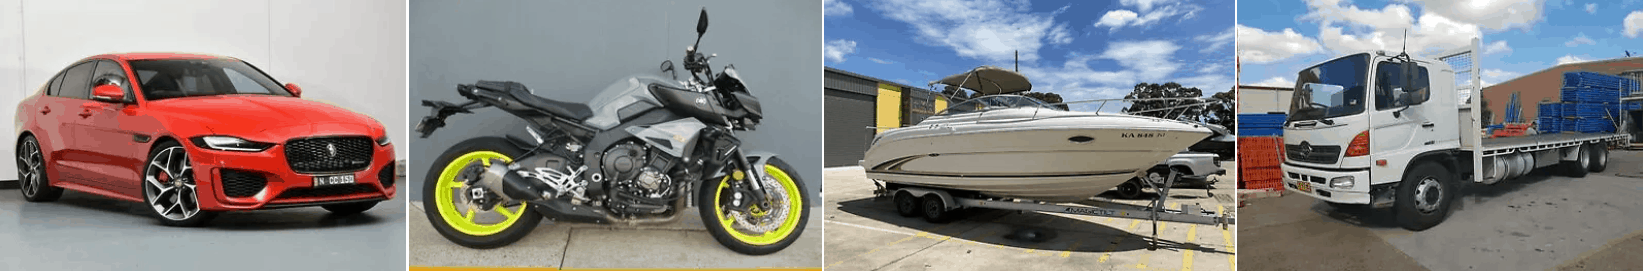 Pawn a Car | Bike | Boat | Truck @epawn.com.au